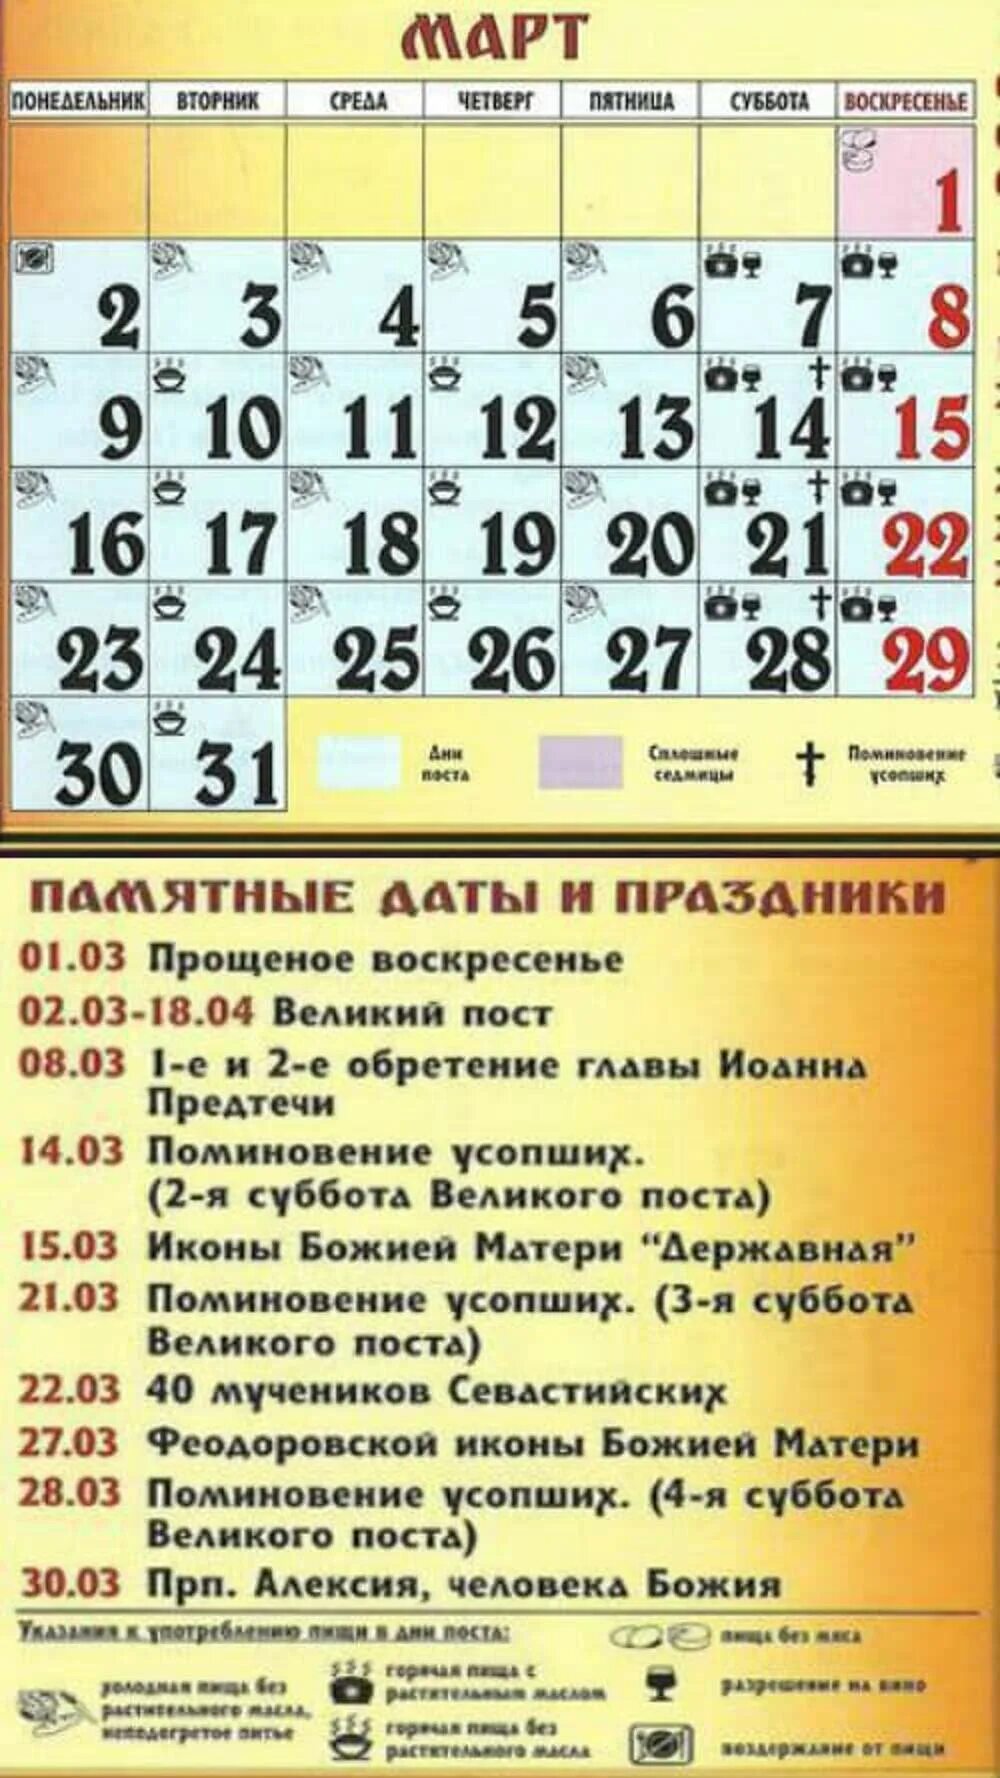 Православный календарь на март месяц. Православные праздники на март. Церкоаныепраздники в февра. Православный календарь православные праздники. Церковные праздники в марте 2021.